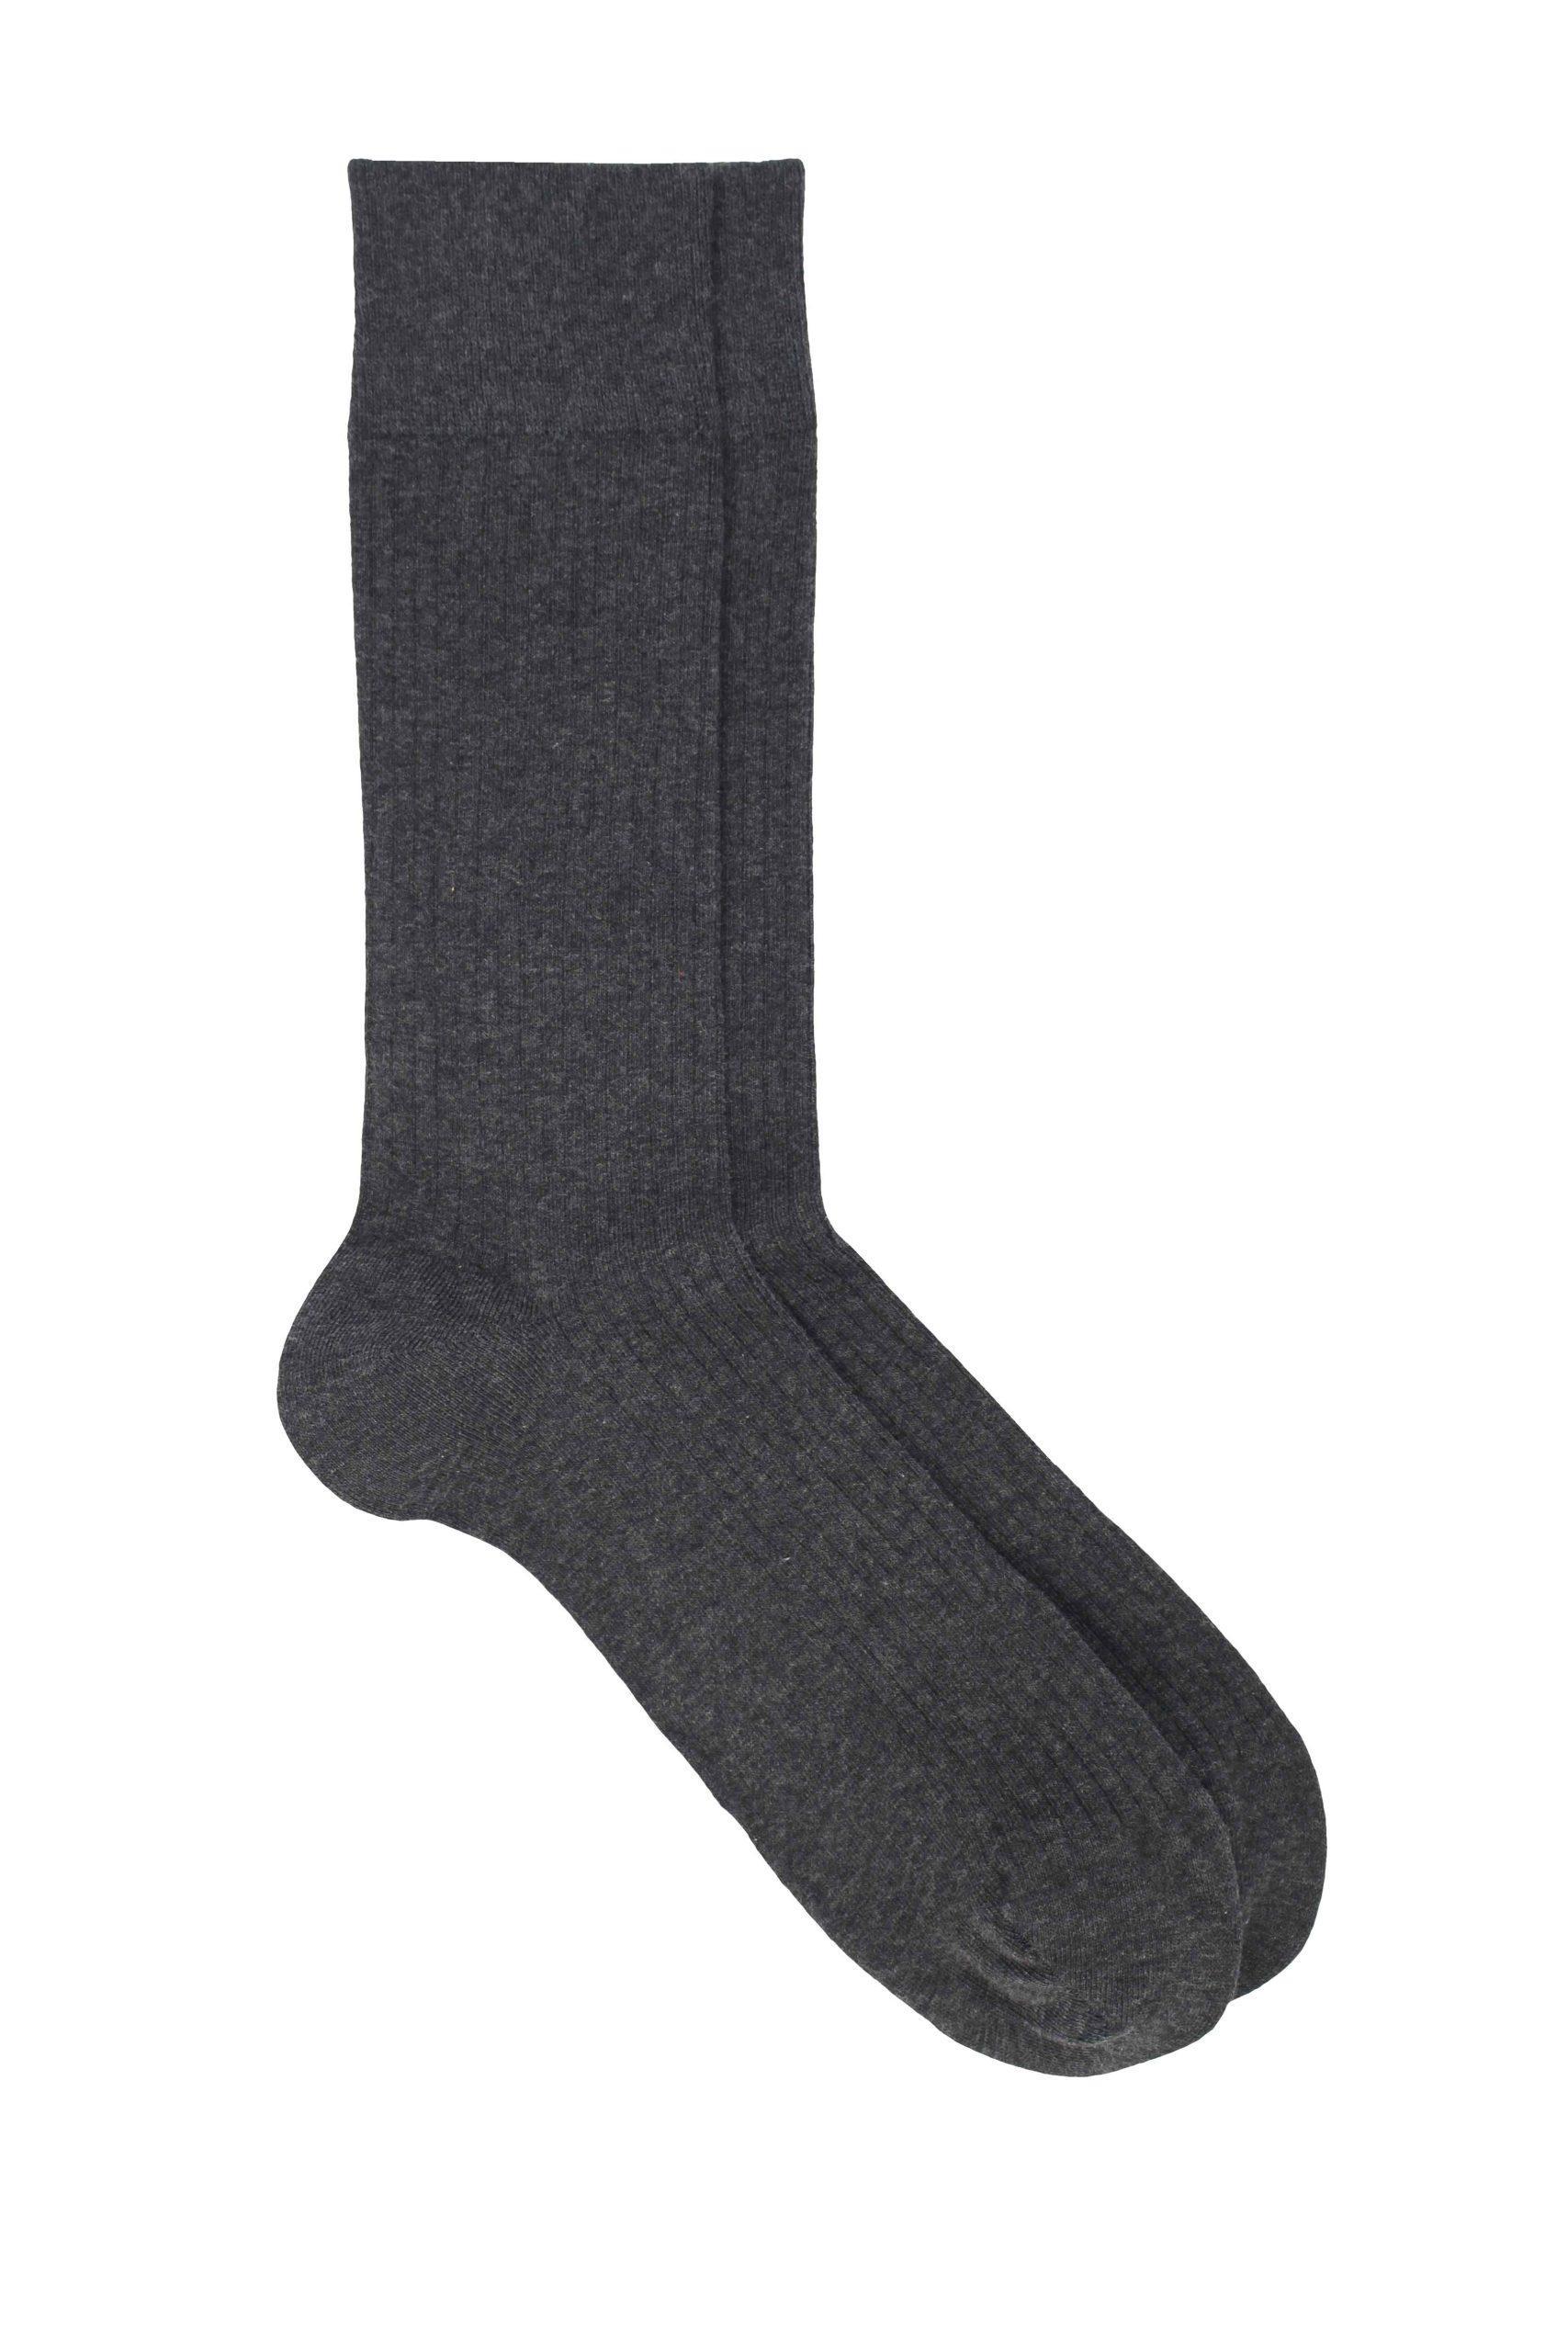 Socks for Men | Basics | PEDEMEIA®